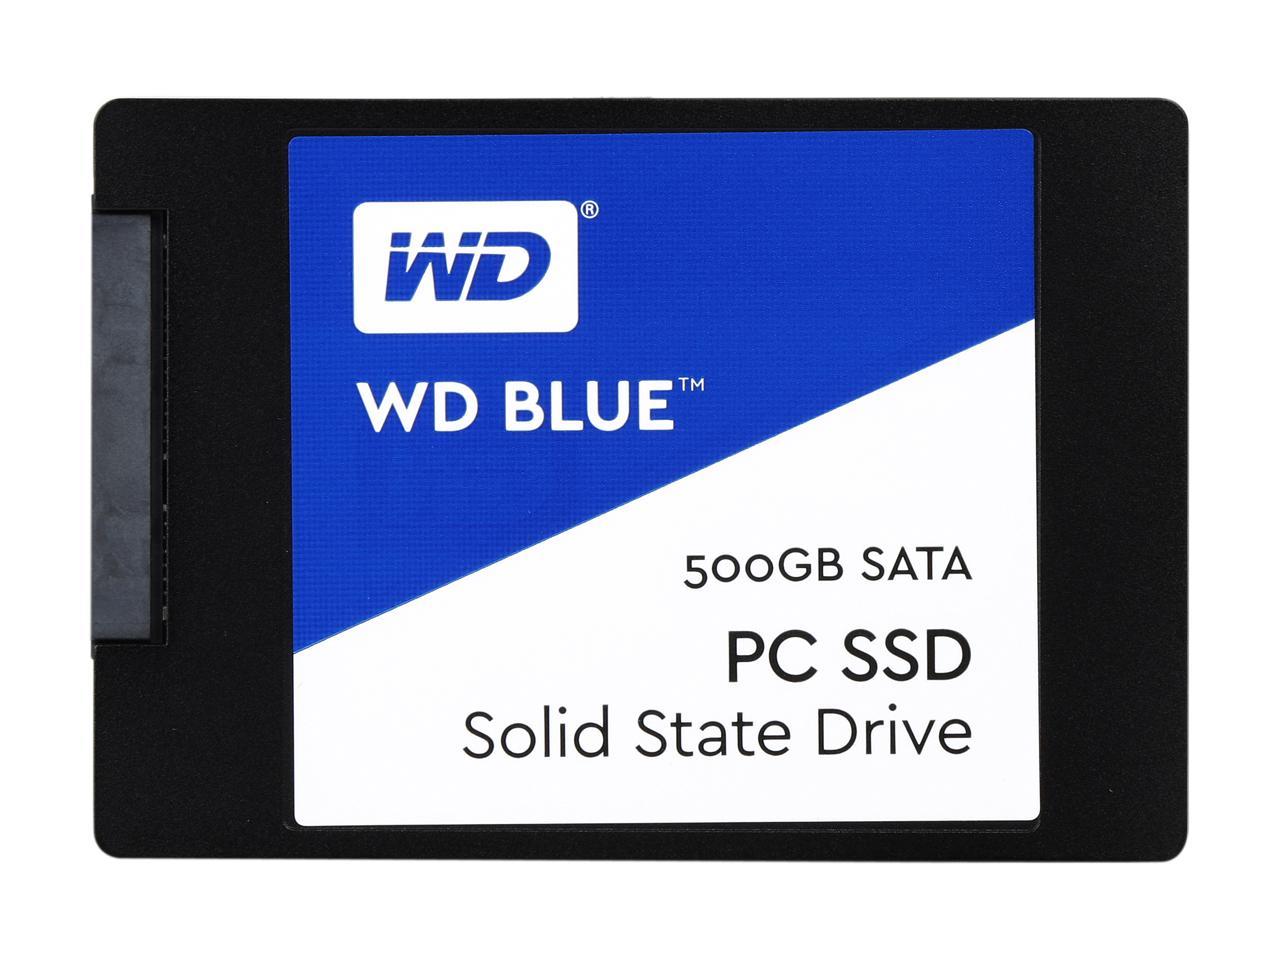 WD Blue 500GB Internal SSD Solid State Drive - SATA 6Gb/s 2.5 Inch - WDS500G1B0A